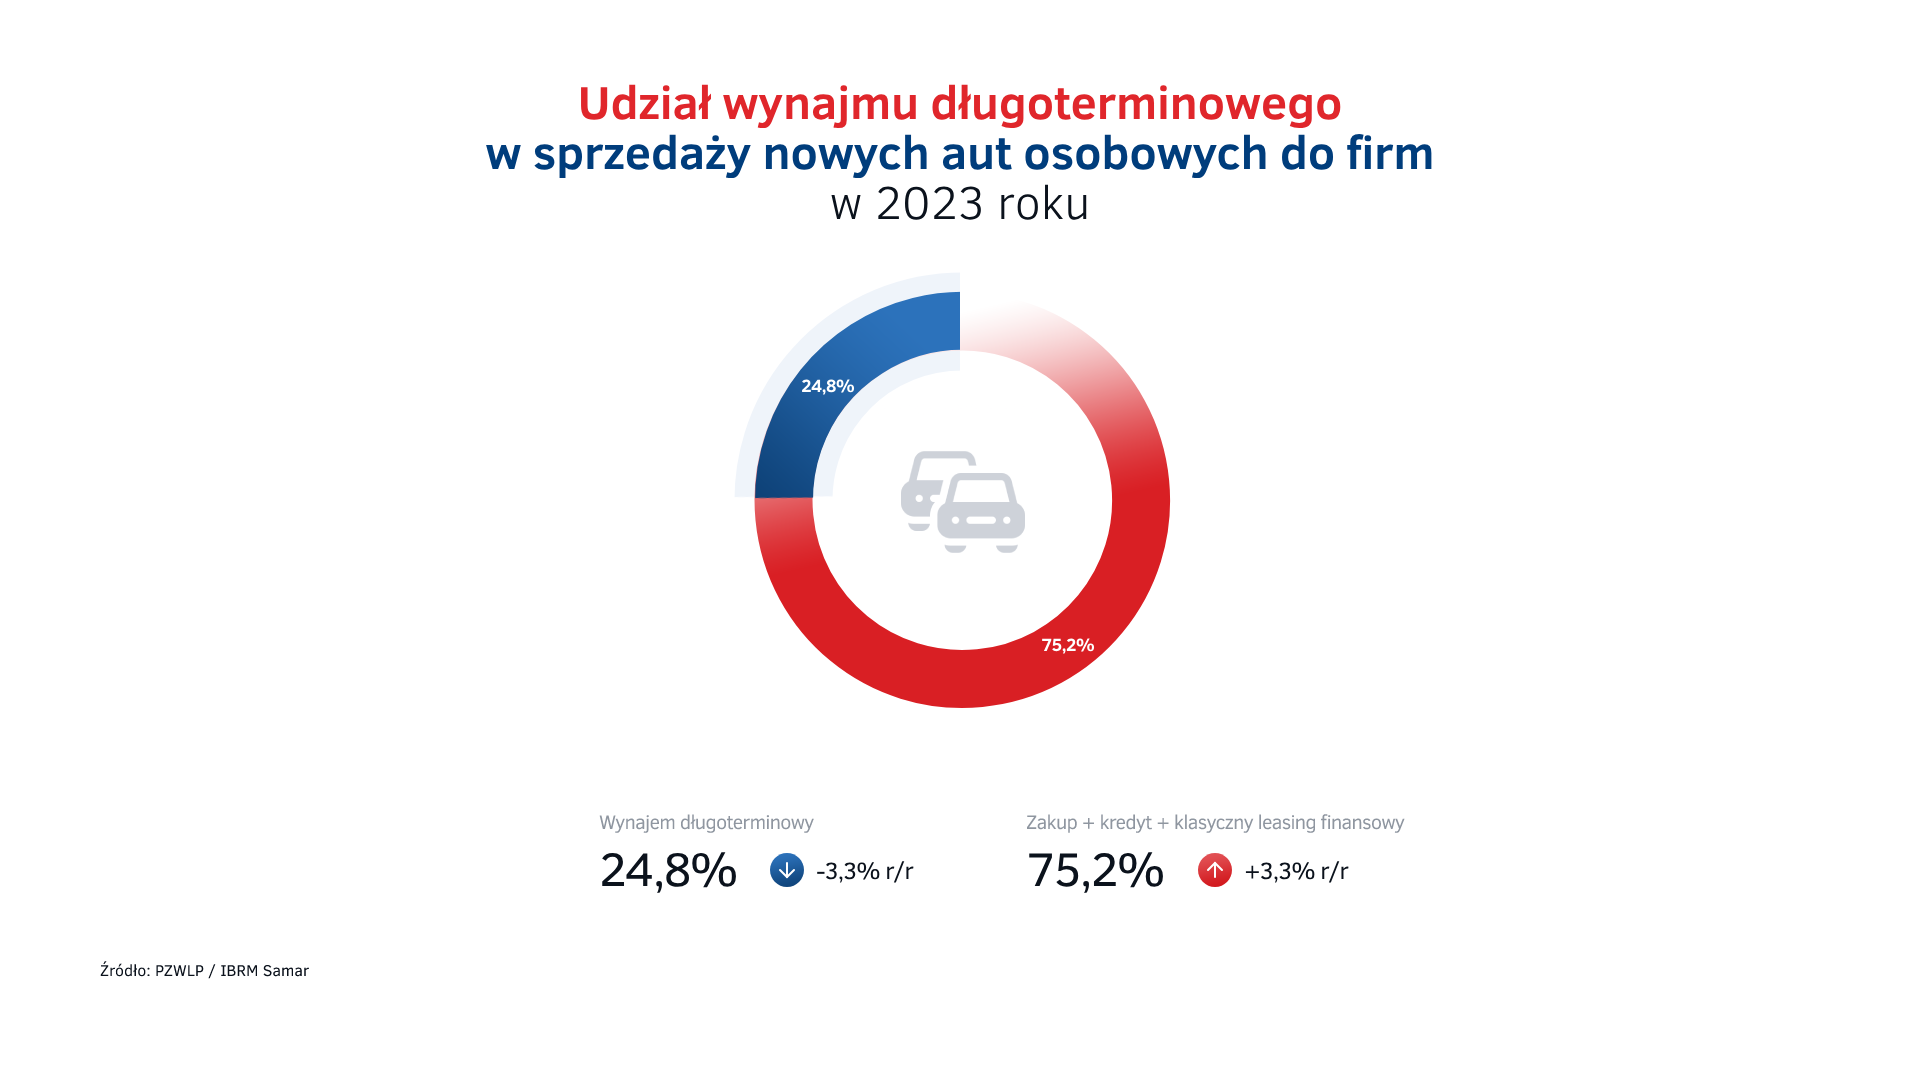 Udział wynajmu długoterminowego - sprzedaż aut do firm w Polsce w 2023.png